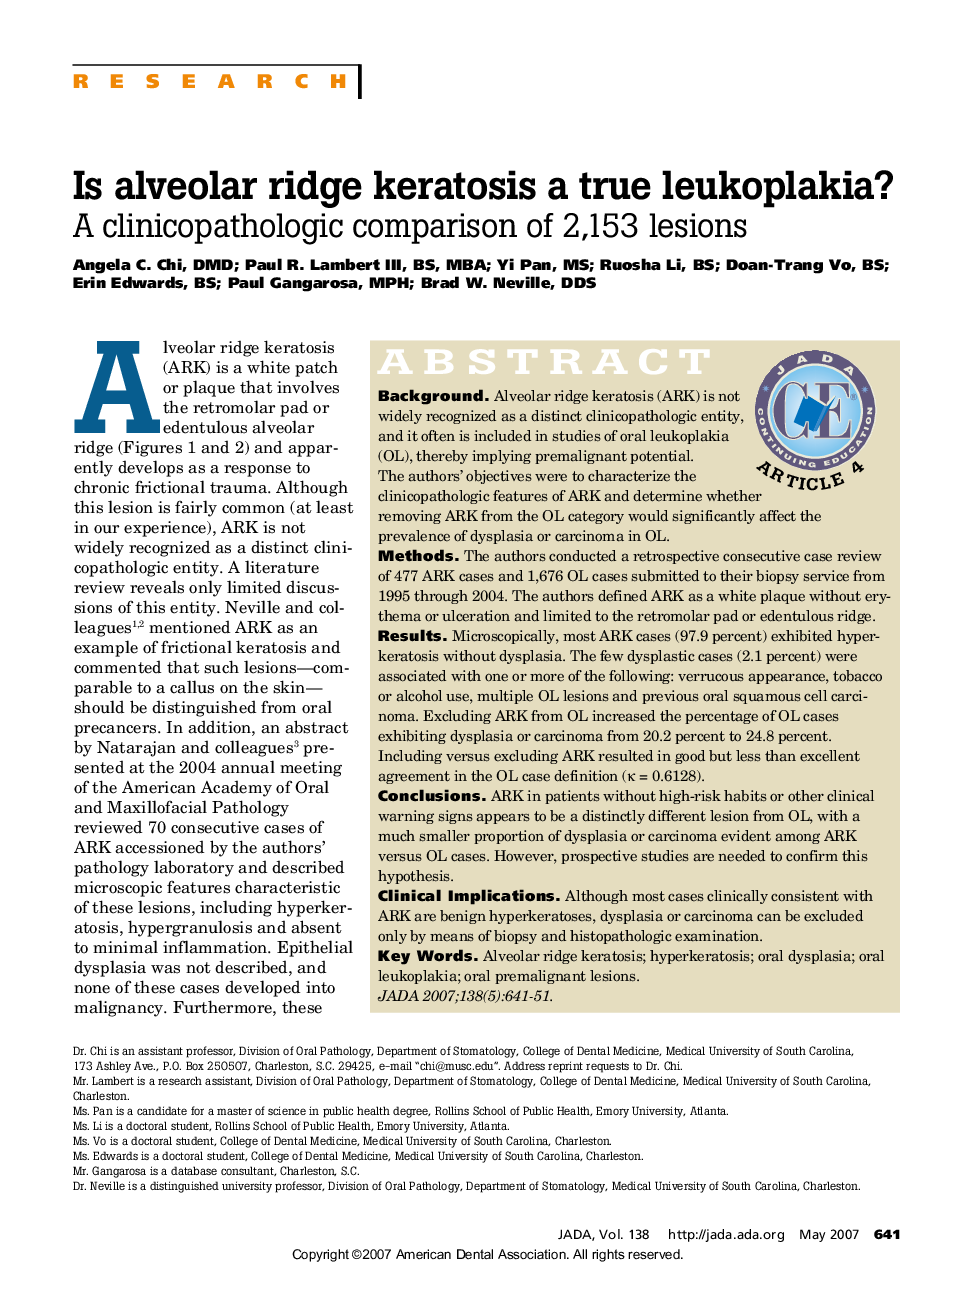 Is alveolar ridge keratosis a true leukoplakia? : A clinicopathologic comparison of 2,153 lesions